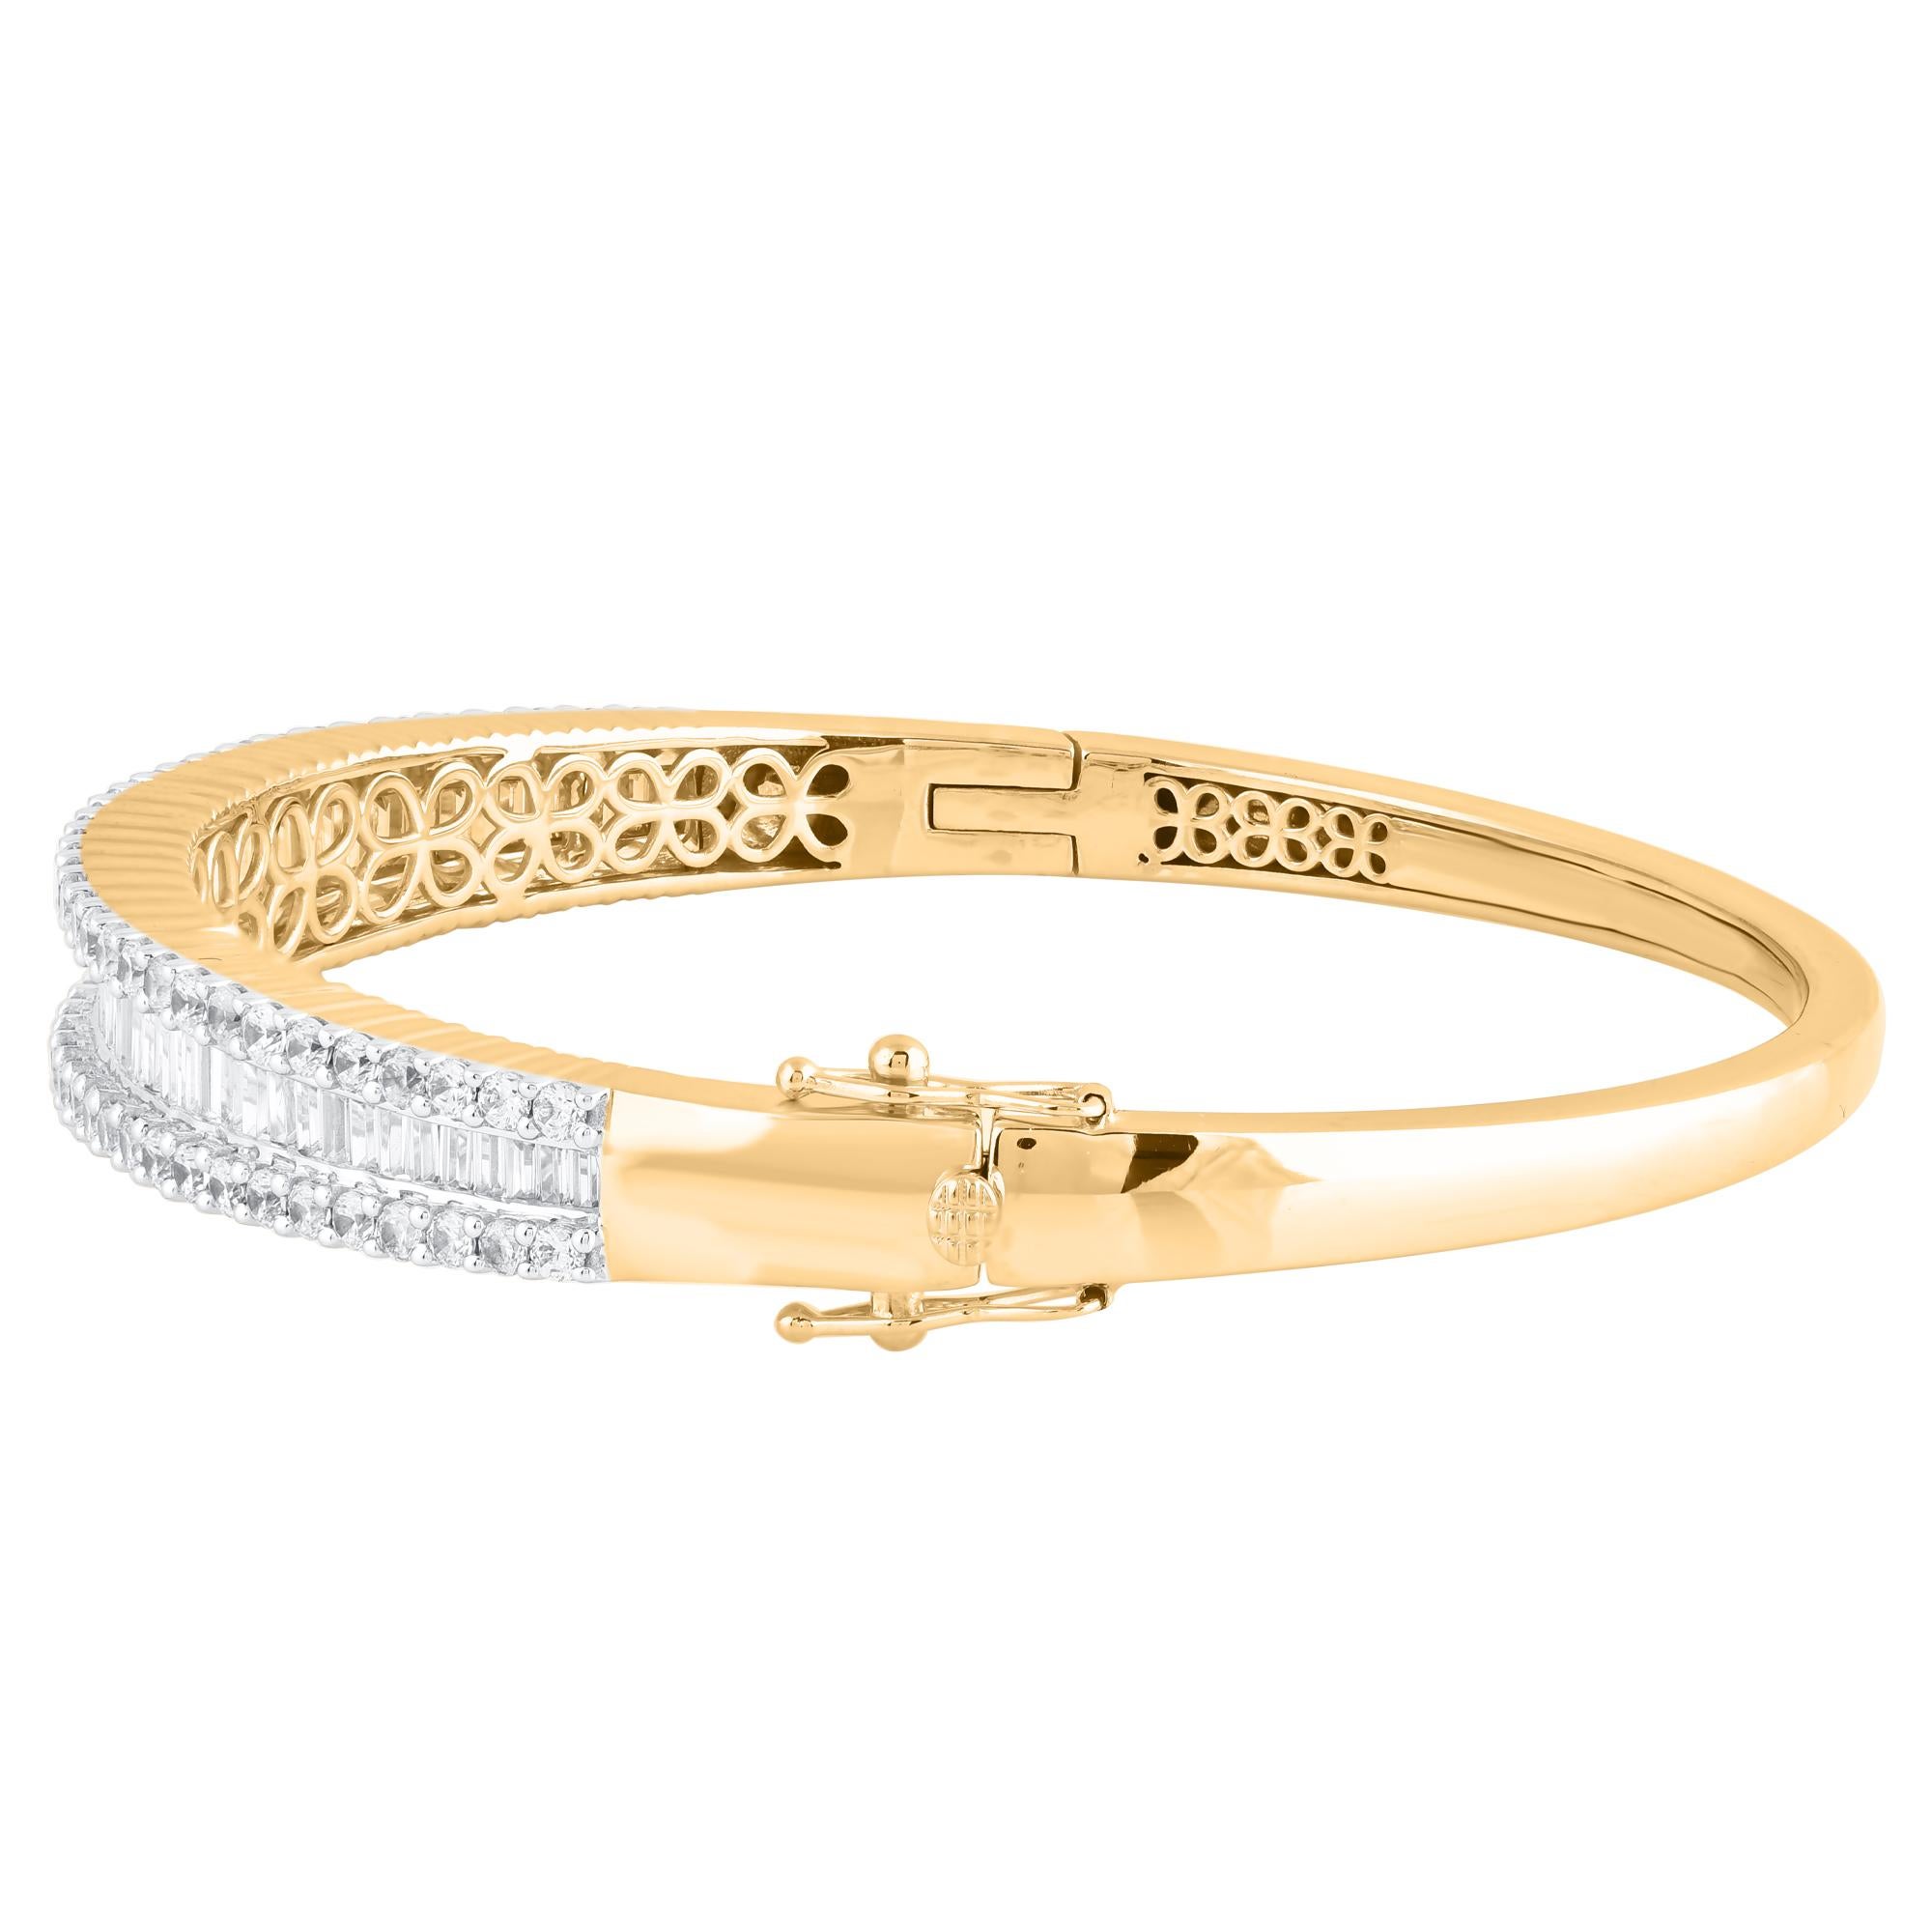 Classique et sophistiqué, ce bracelet en diamants s'accorde avec toutes les tenues vestimentaires. Ce bracelet bangle scintillant présente 119 diamants naturels de taille brillant et baguette en serti clos et en serti canal, en or jaune 18 carats.